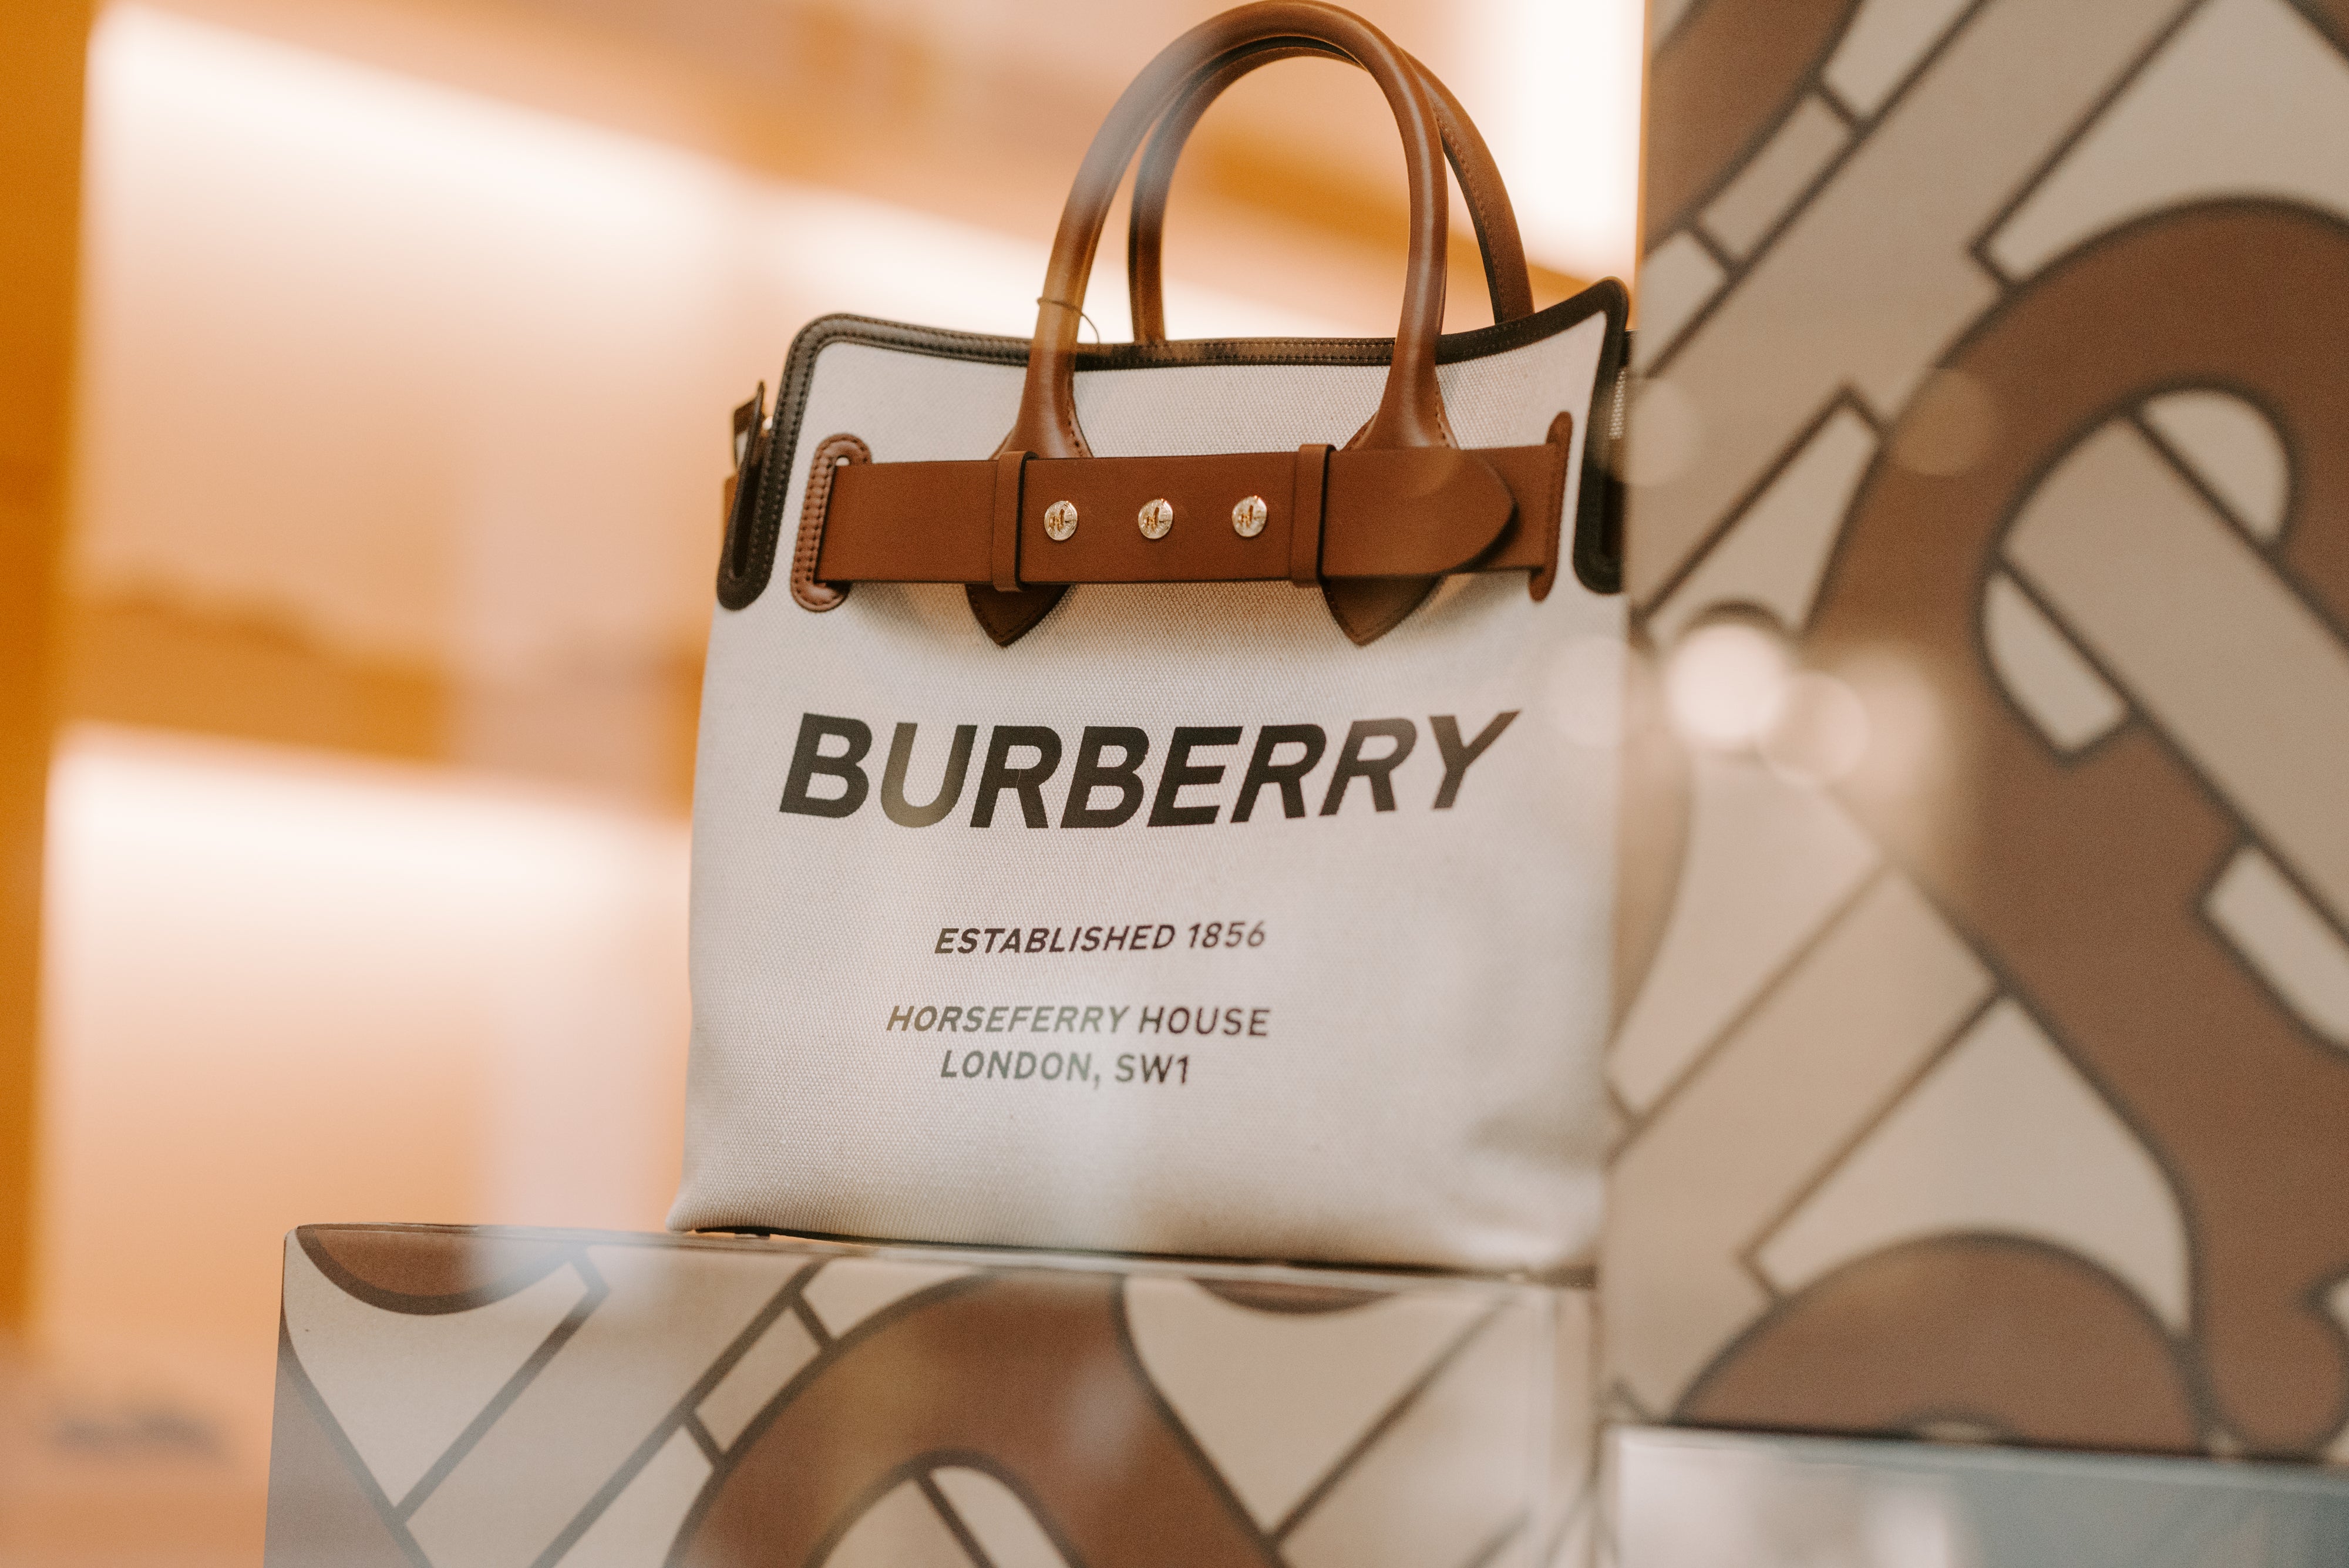 Best Of UK - Burberry Handbags - BagBagg